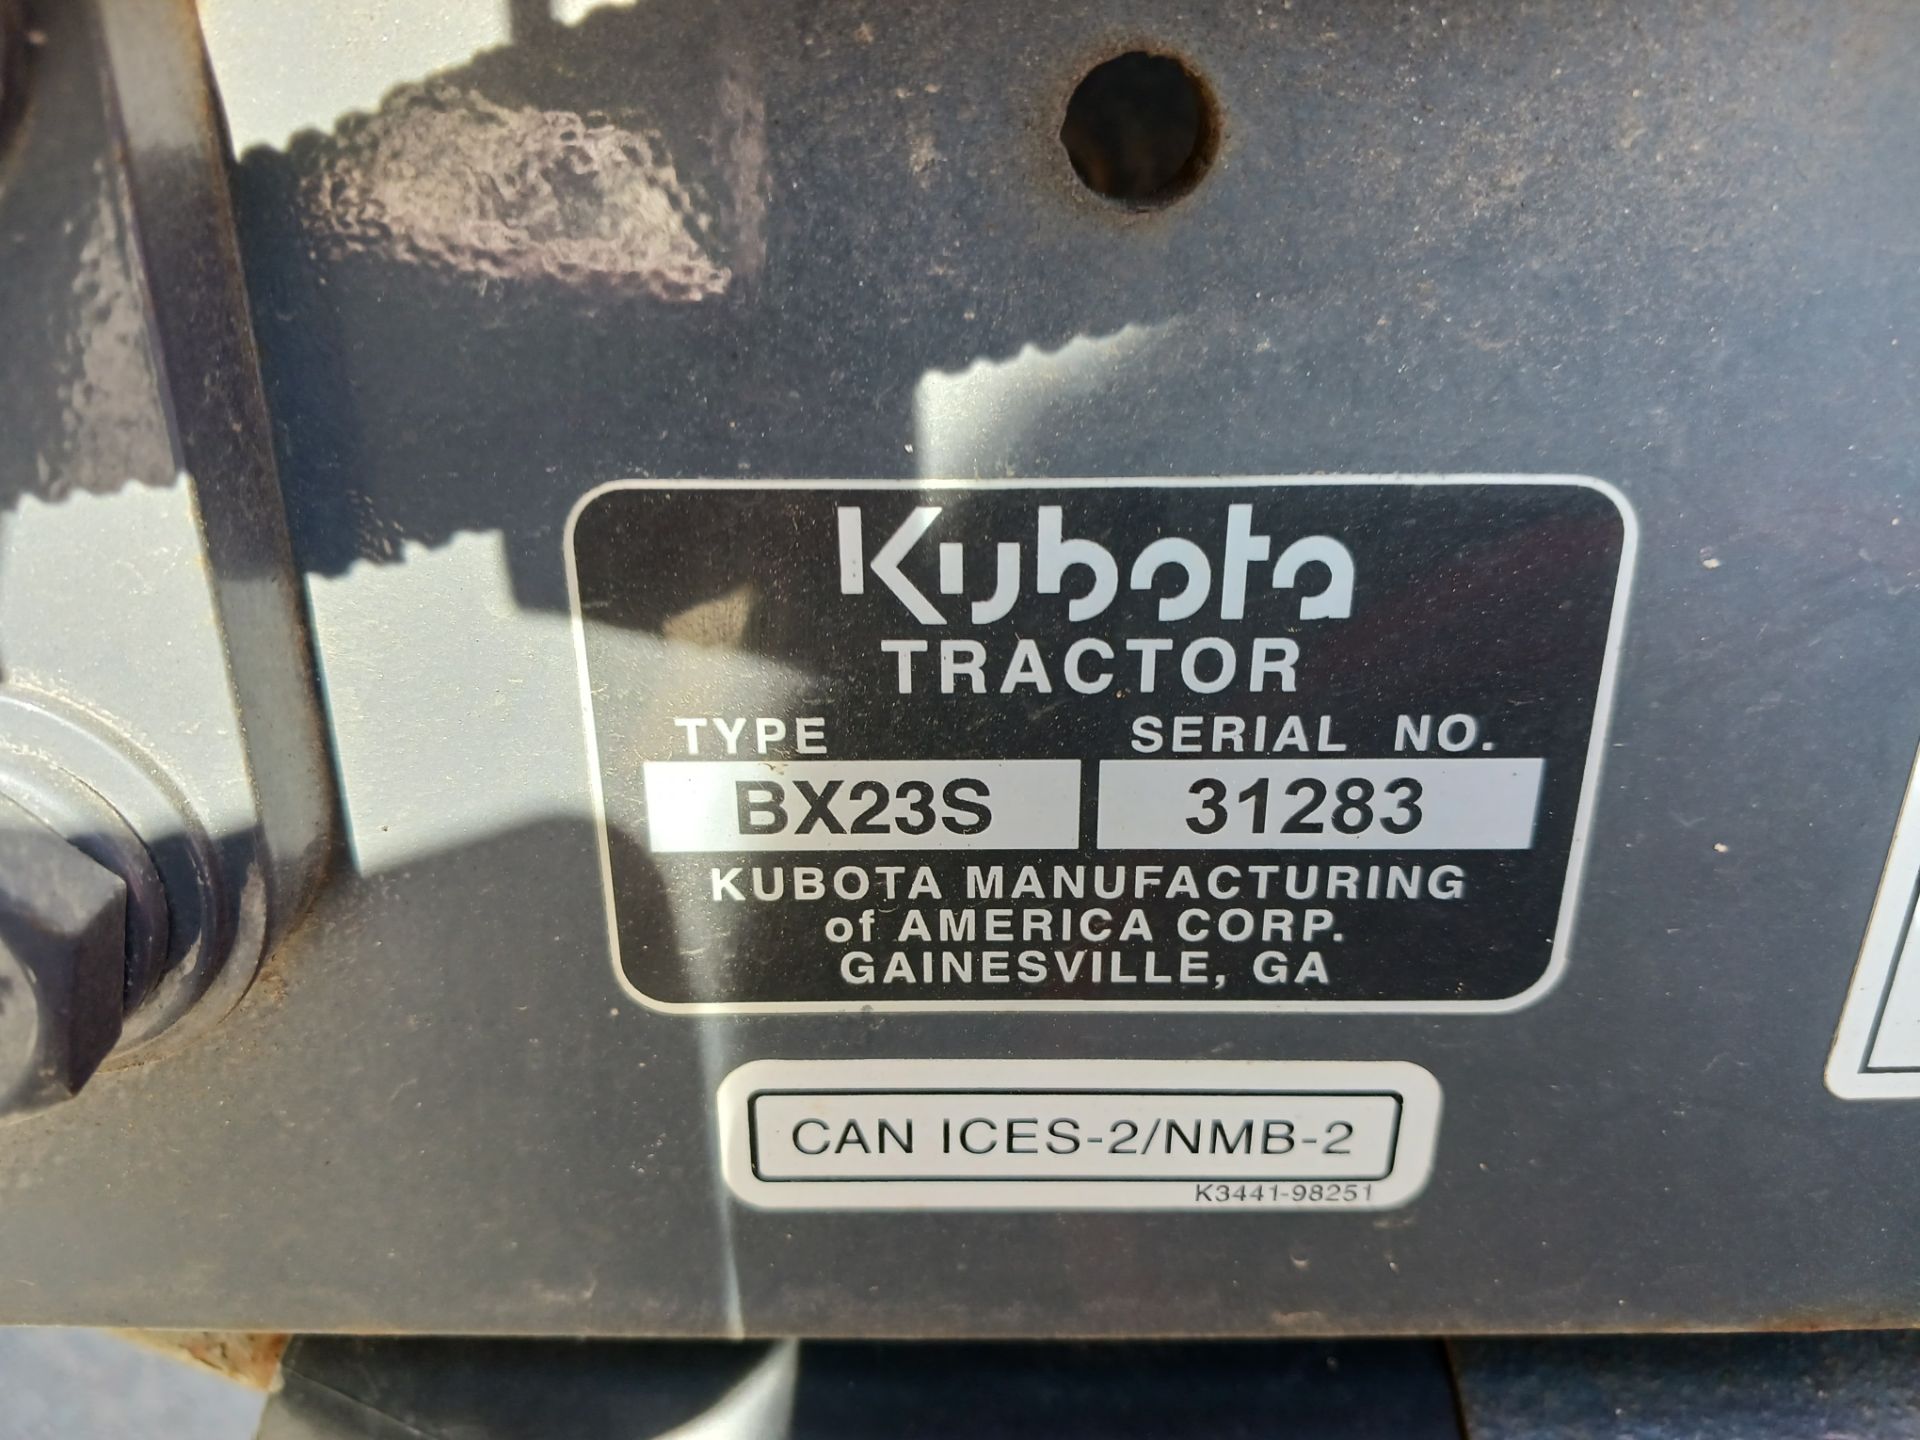 2019 Kubota BX23S Backhoe Loader Tractor - Image 19 of 19